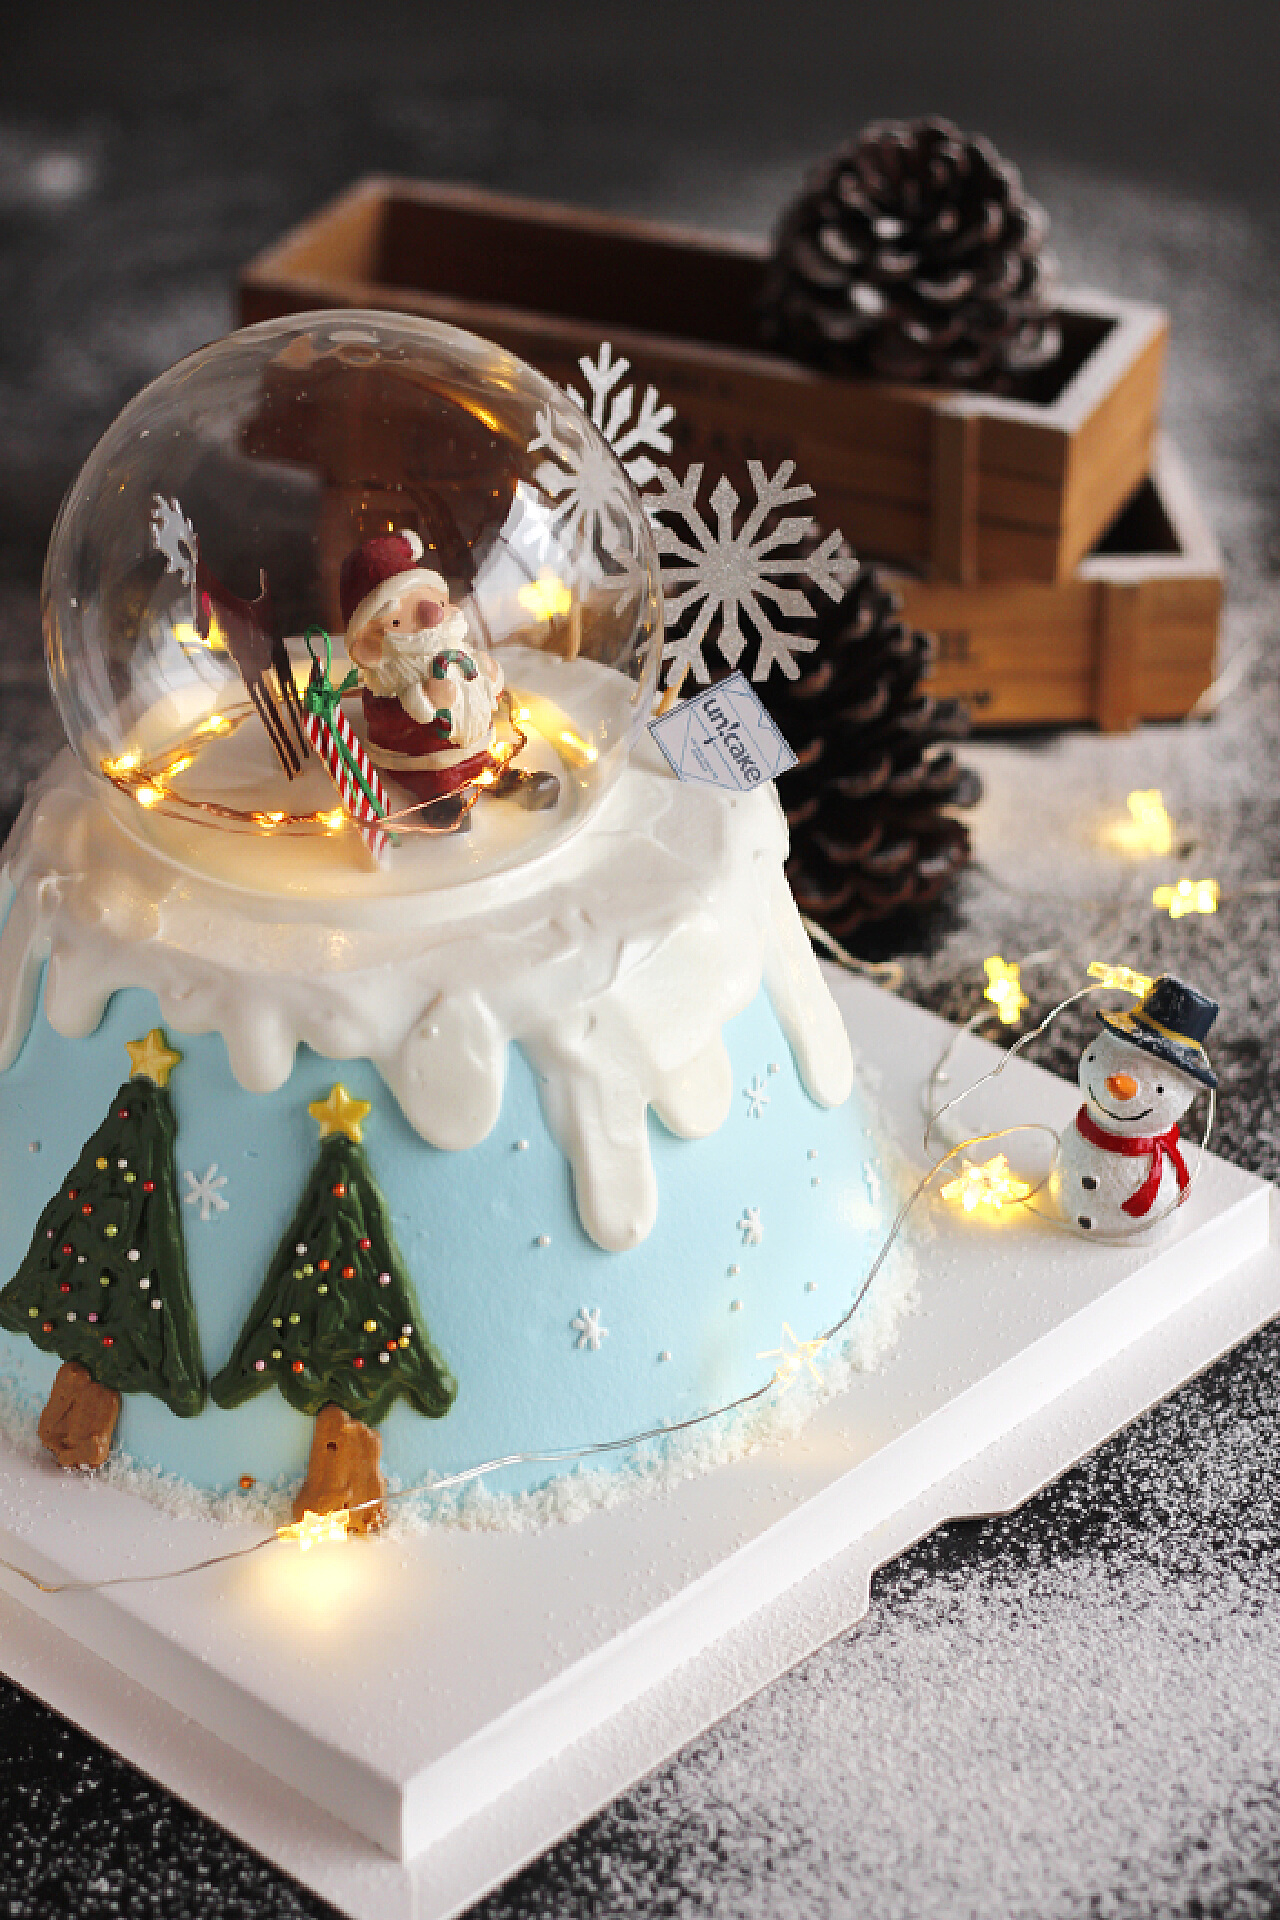 圣诞老人杯子蛋糕怎么做_圣诞老人杯子蛋糕的做法_A芈菇凉_豆果美食